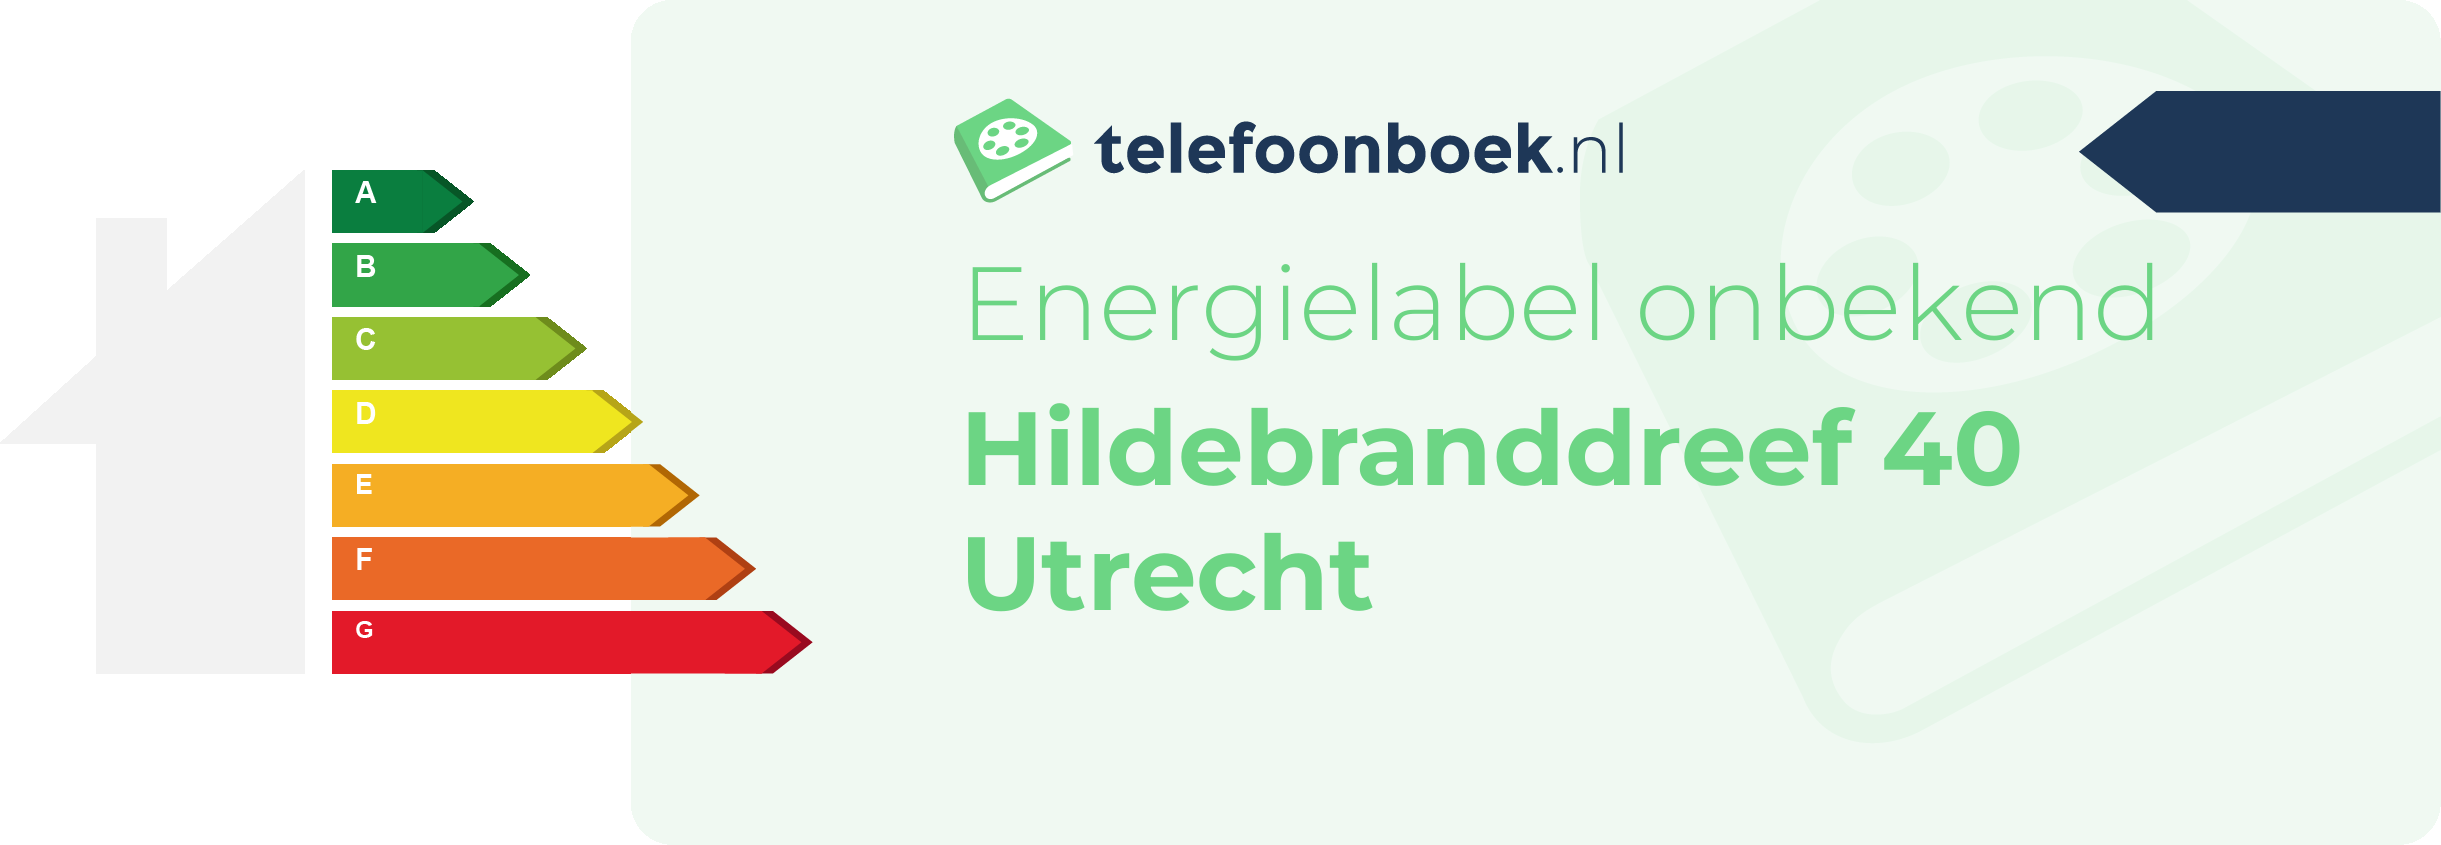 Energielabel Hildebranddreef 40 Utrecht